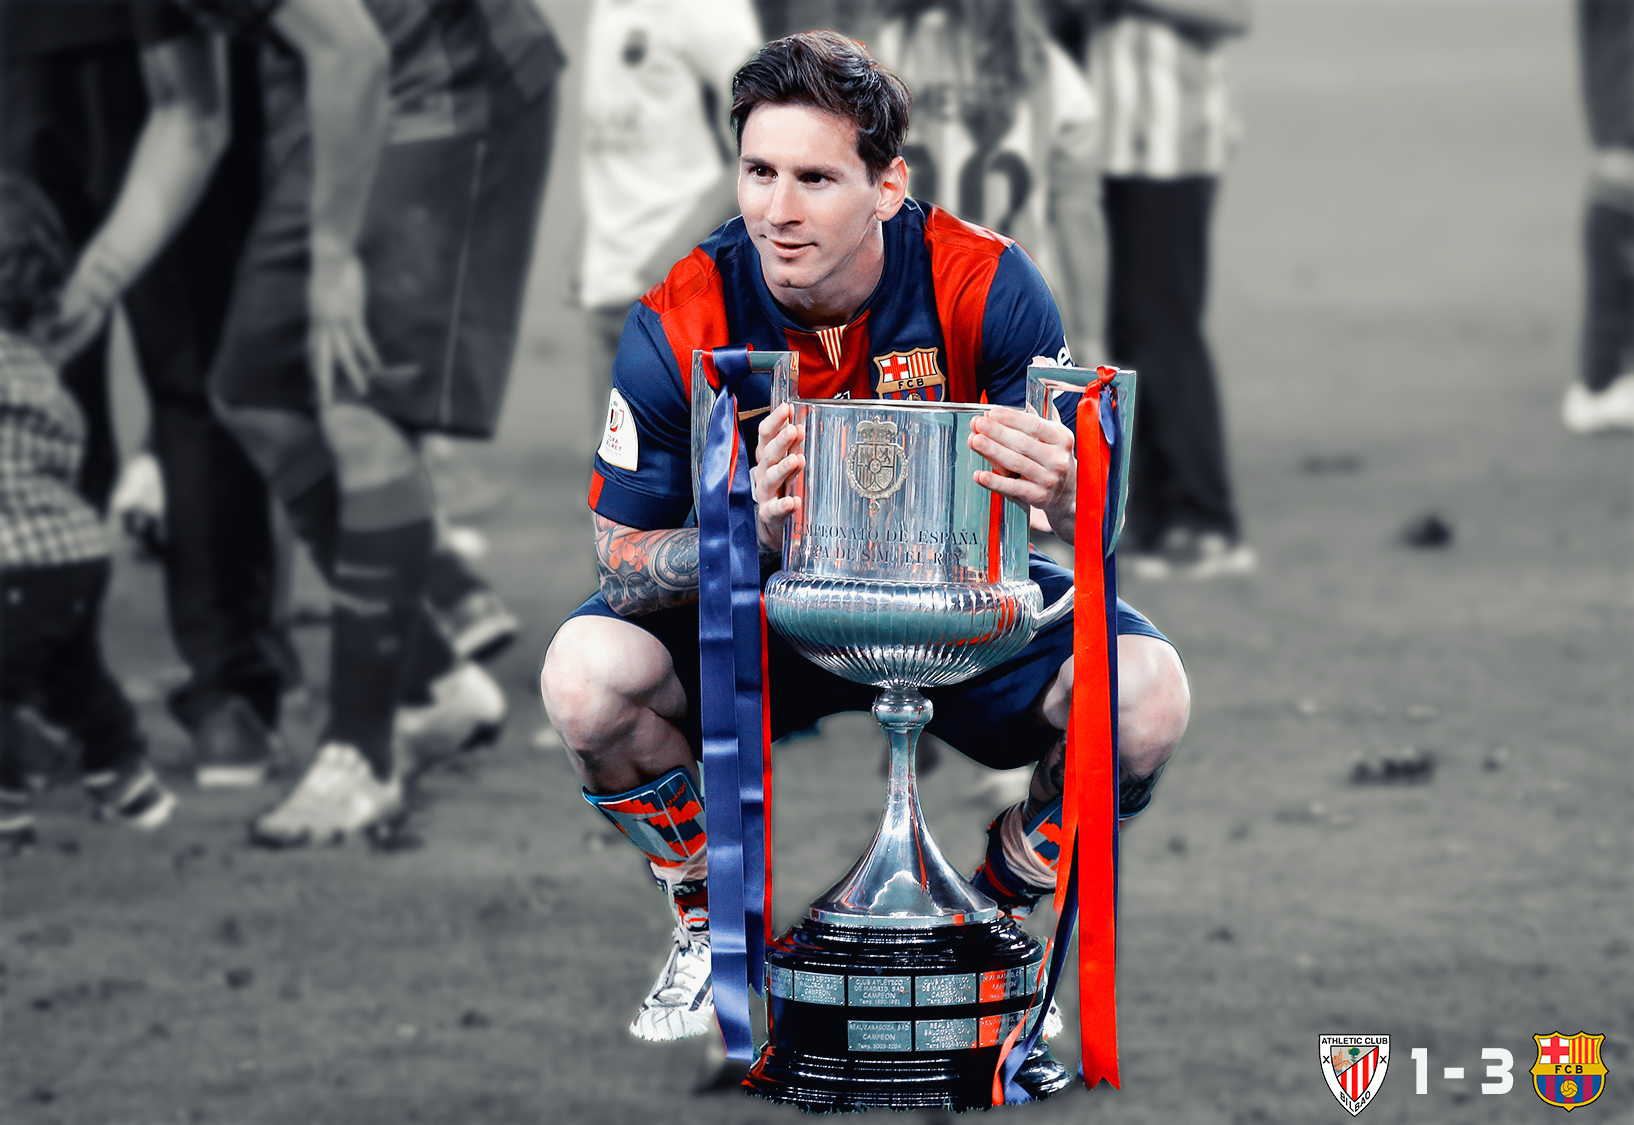 Trong cuộc sống, không có gì tuyệt vọng hơn khi không thể chạm tay vào ước mơ của mình. Với Lionel Messi, anh đã có cơ hội đạt được giấc mơ thắng World Cup và ôm chiếc cúp vào năm